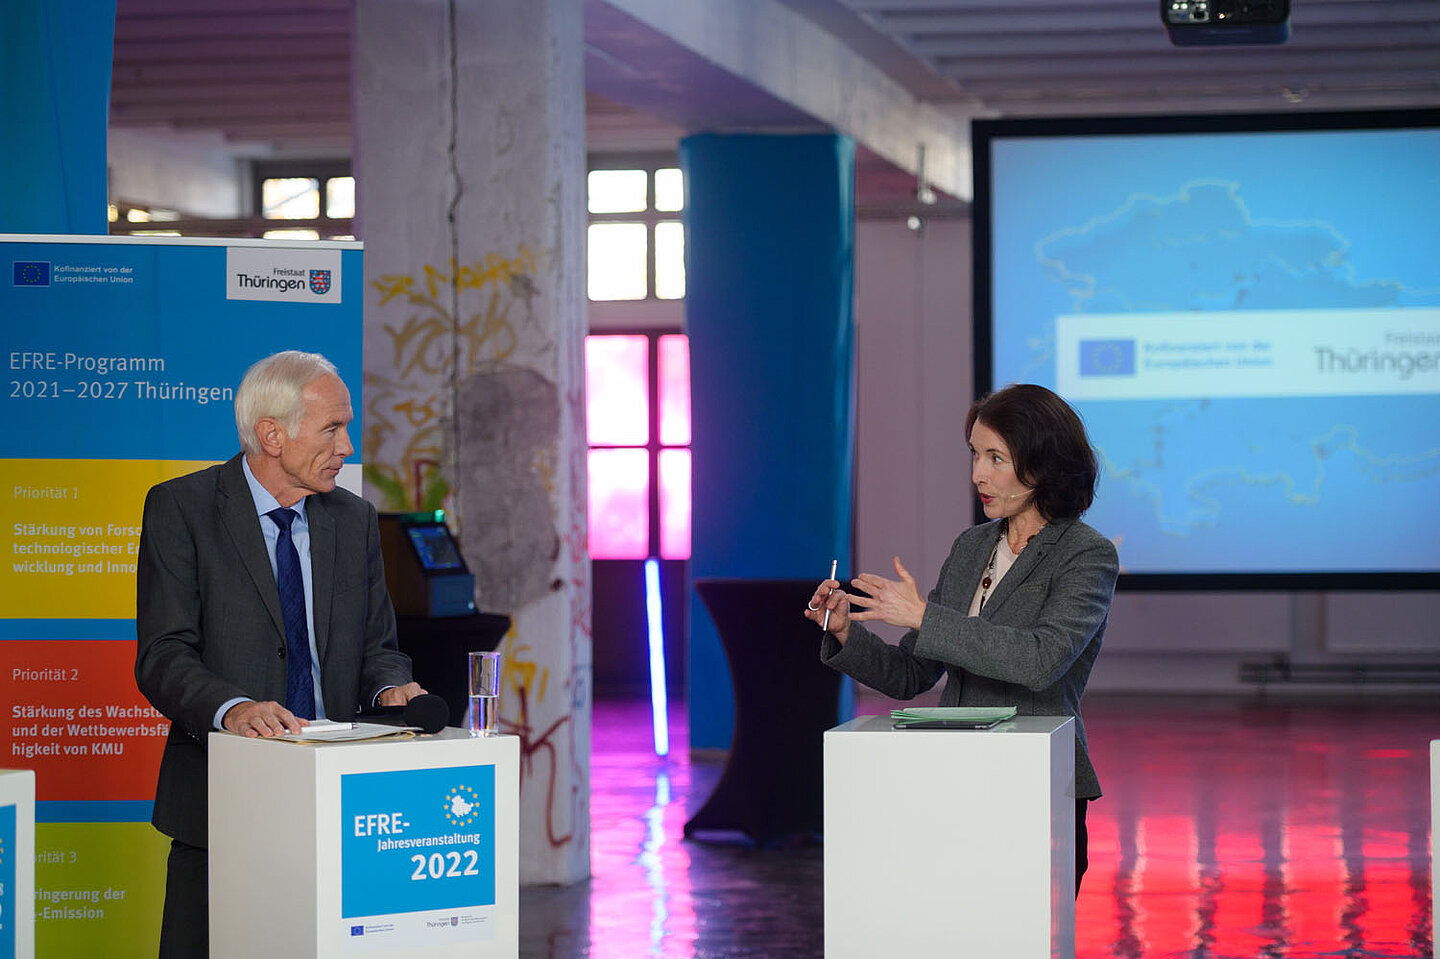 Podiumsdiskussion während der EFRE-Jahresveranstaltung 2022